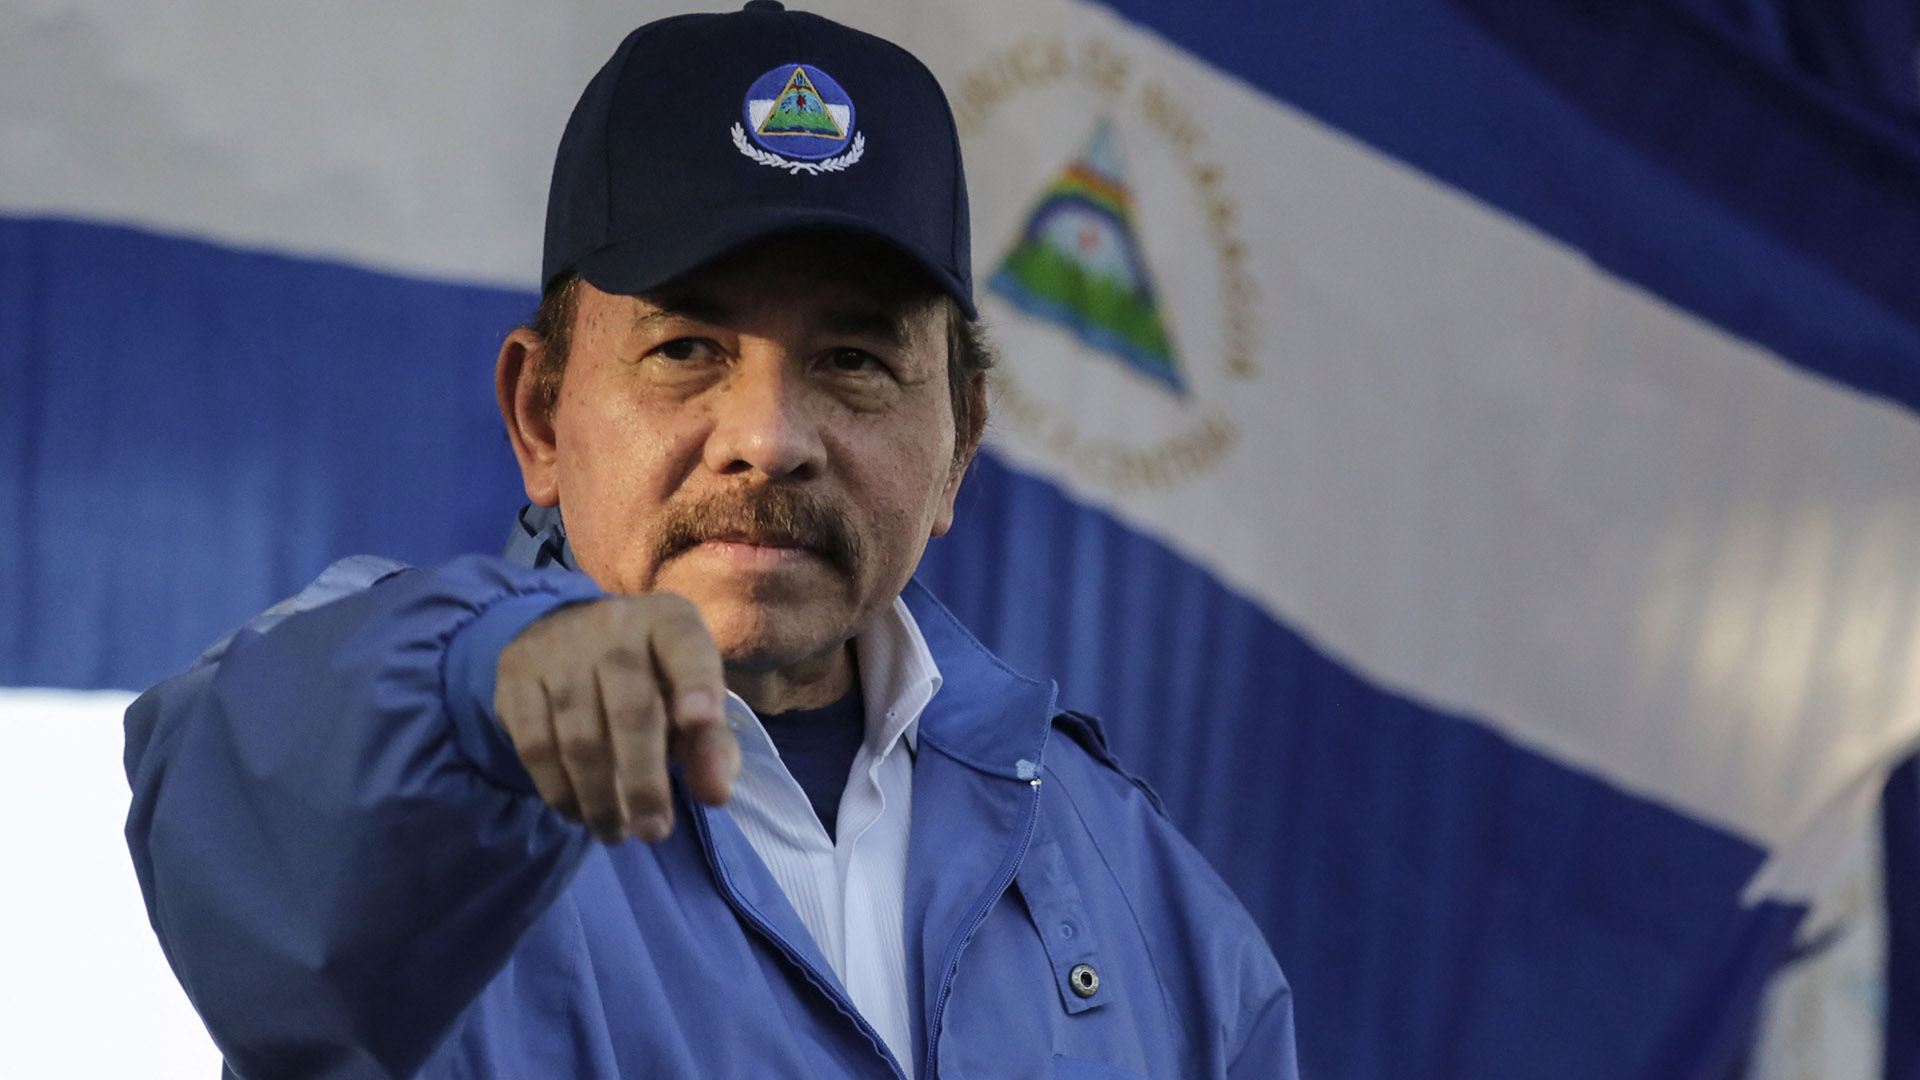 EE.UU. ha exigido a Ortega que convoque a elecciones anticipadas al considerar que esa es la única vía posible para salir de la situación actual